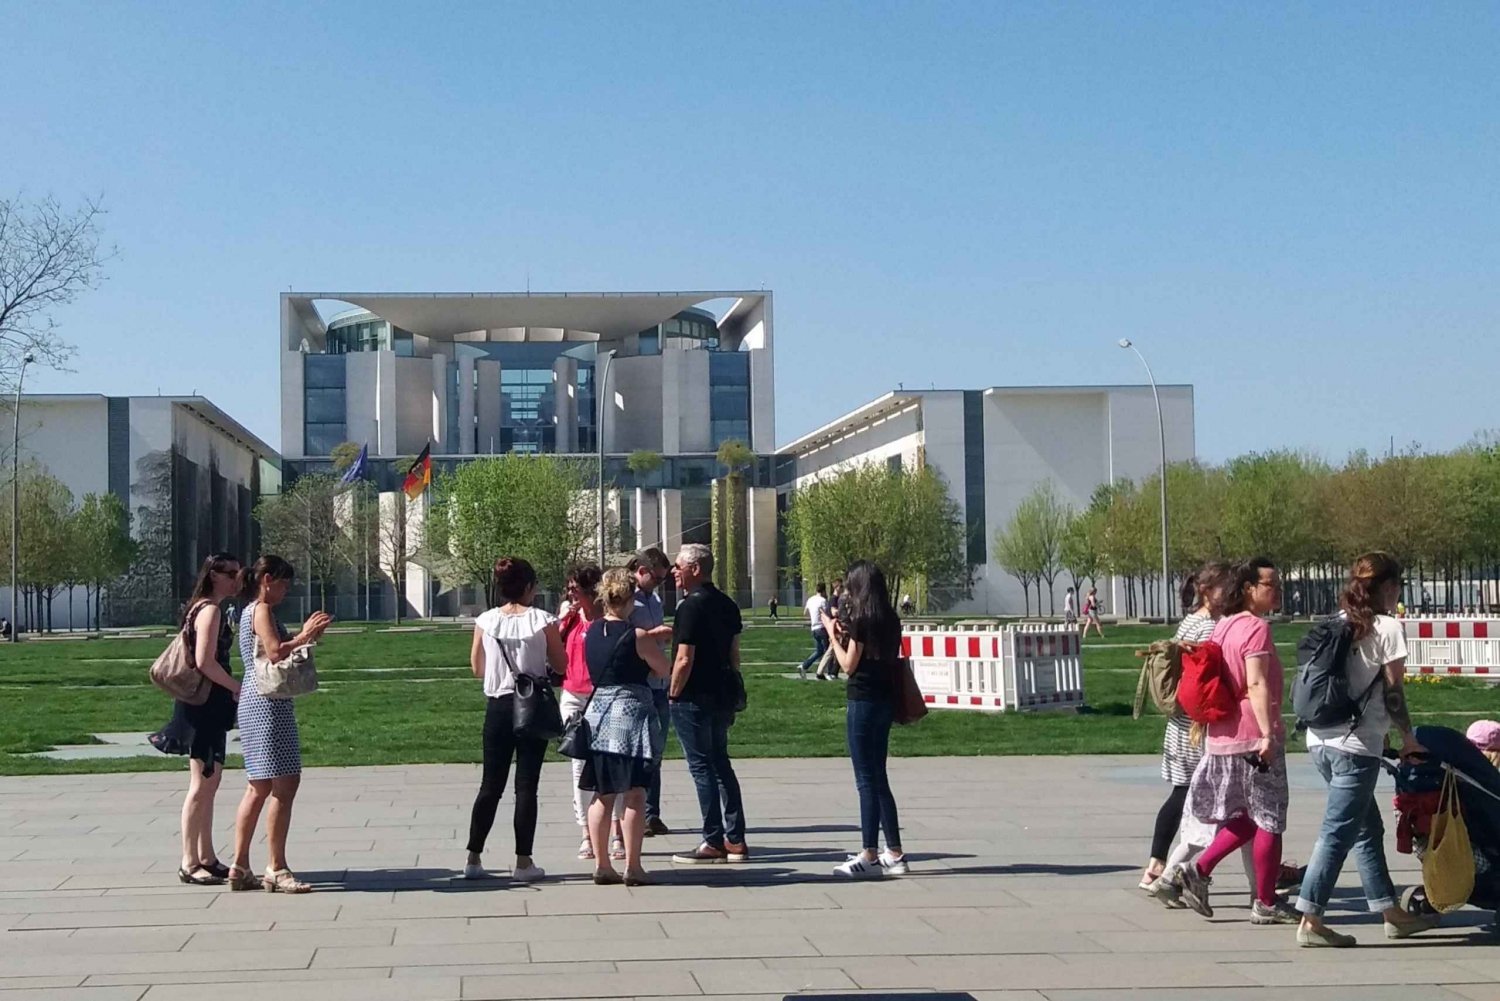 Berlim: distrito governamental em torno da visita guiada do Reichstag